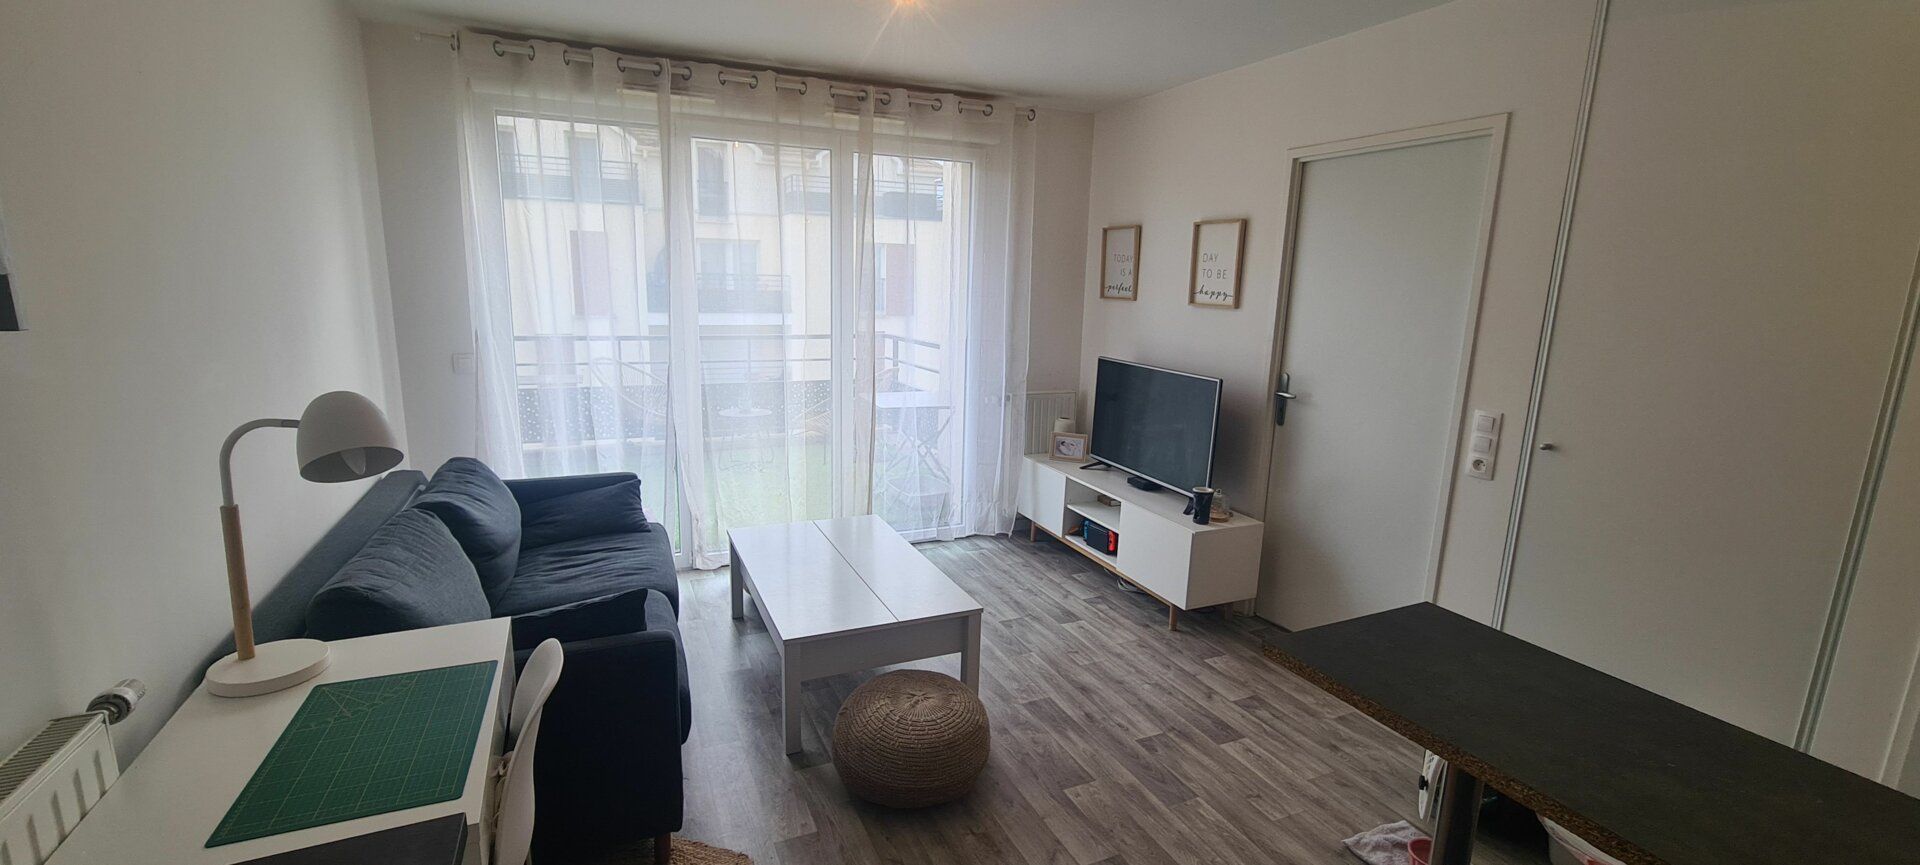 Appartement à vendre 2 38m2 à Saint-Pierre-du-Perray vignette-1